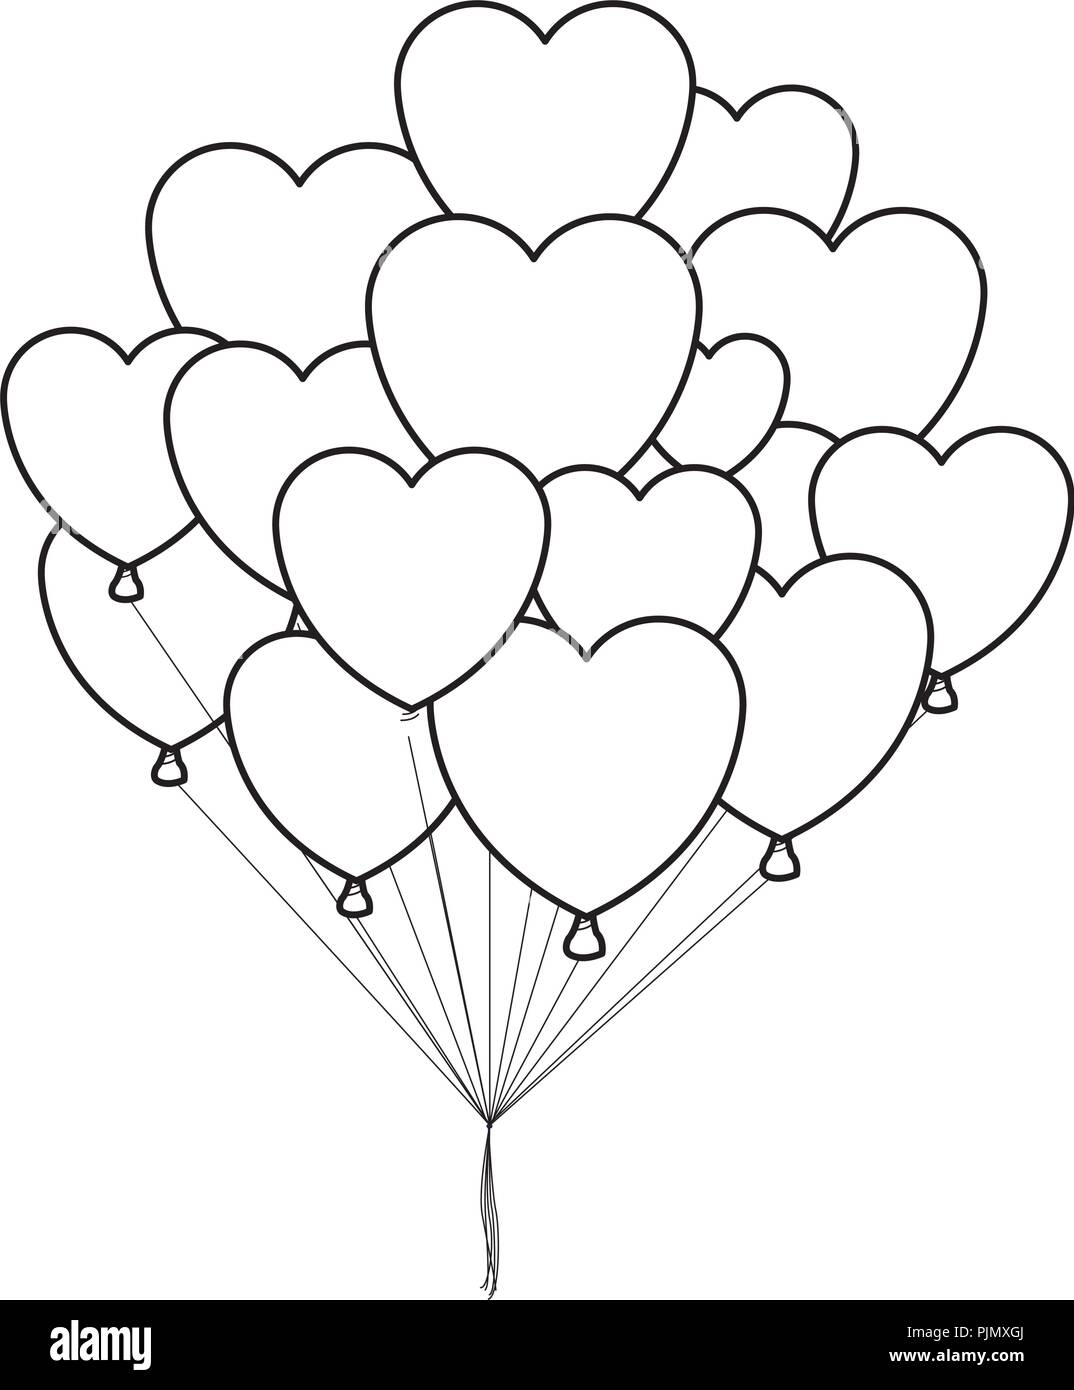 Ballon coeur Banque d'images noir et blanc - Alamy